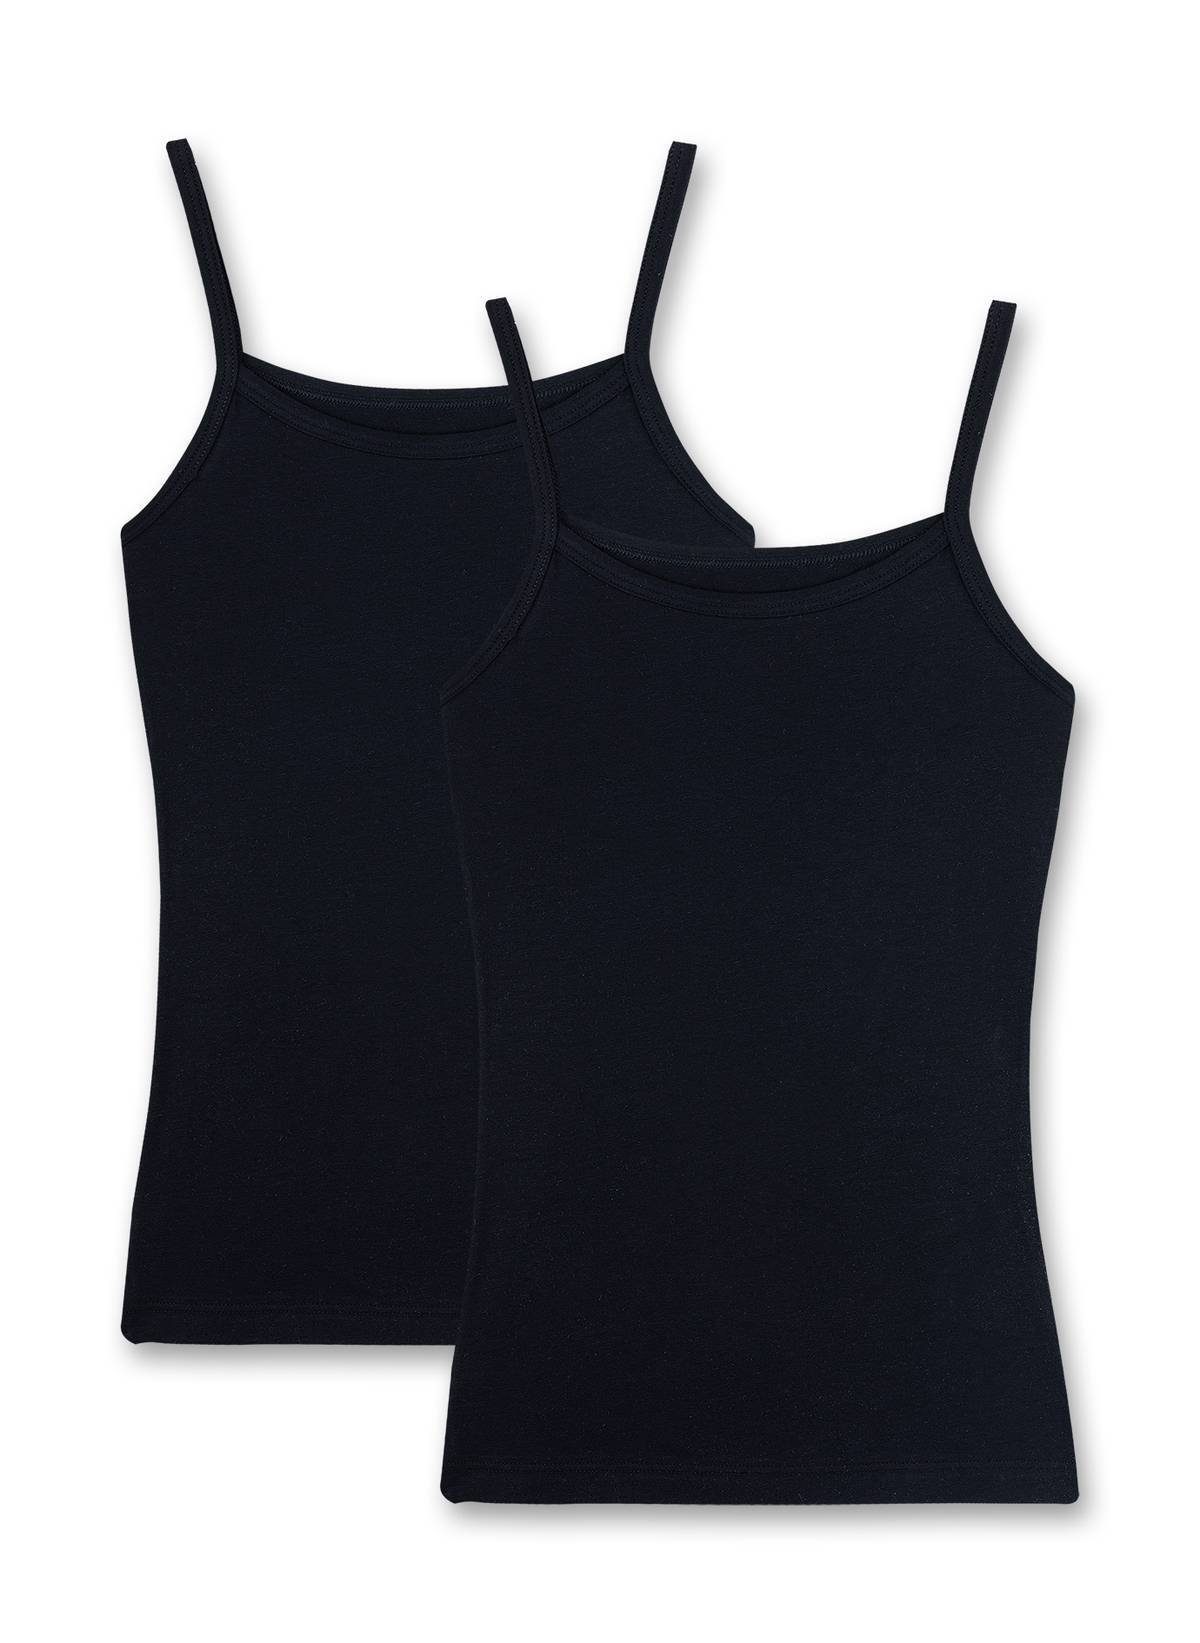 Sanetta Unterhemd Mädchen Unterhemd, 2er Pack - Shirt ohne Arme, Top Schwarz